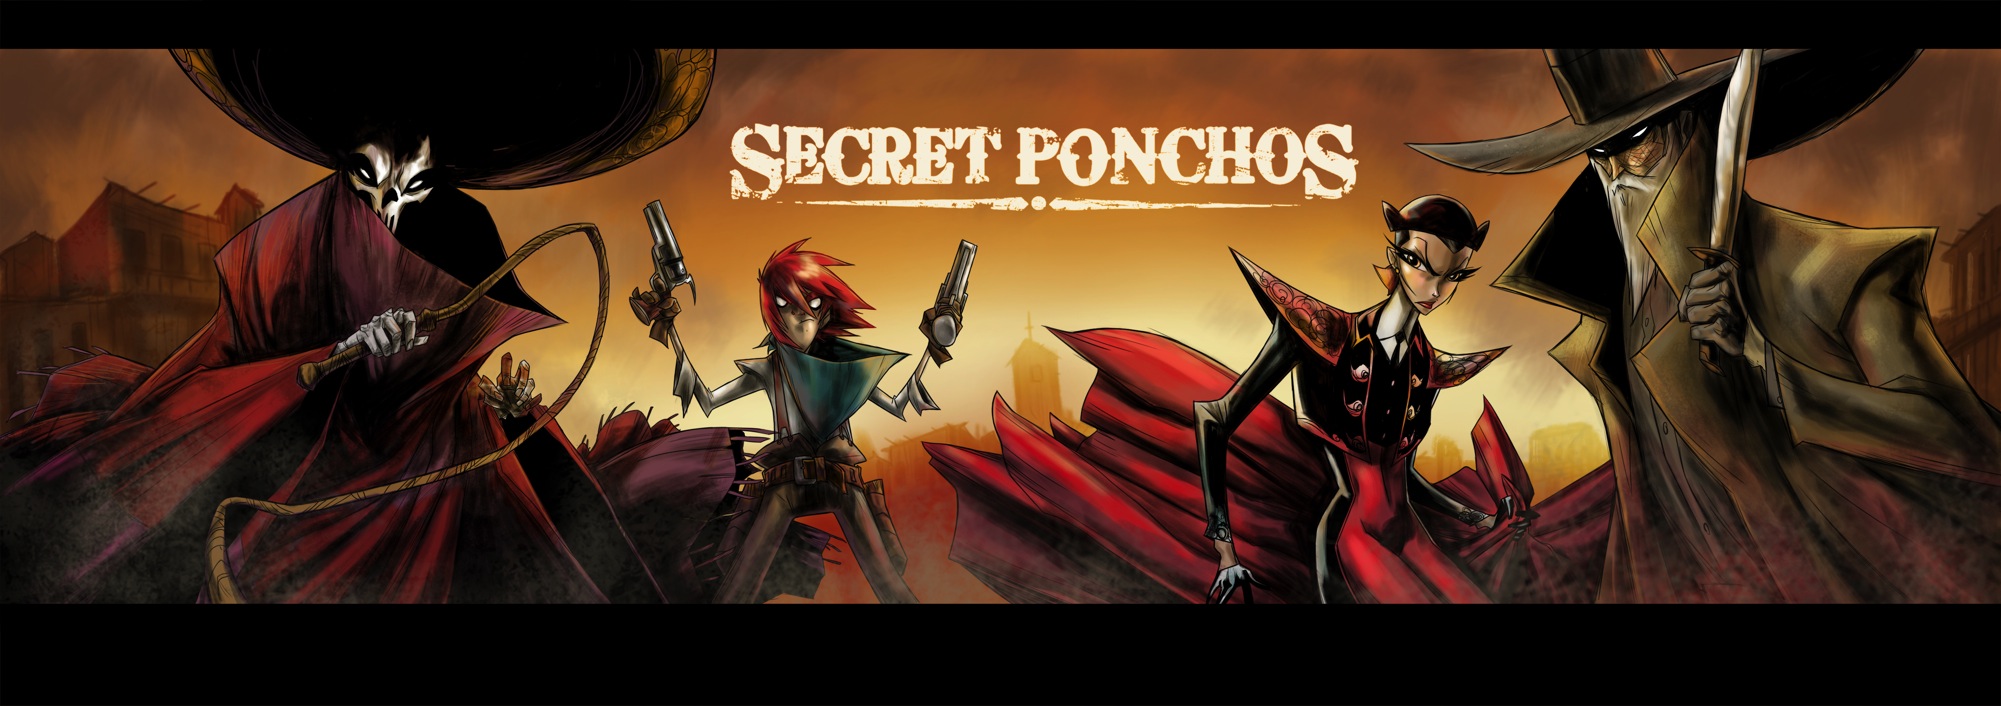 Secret Ponchos - bannière